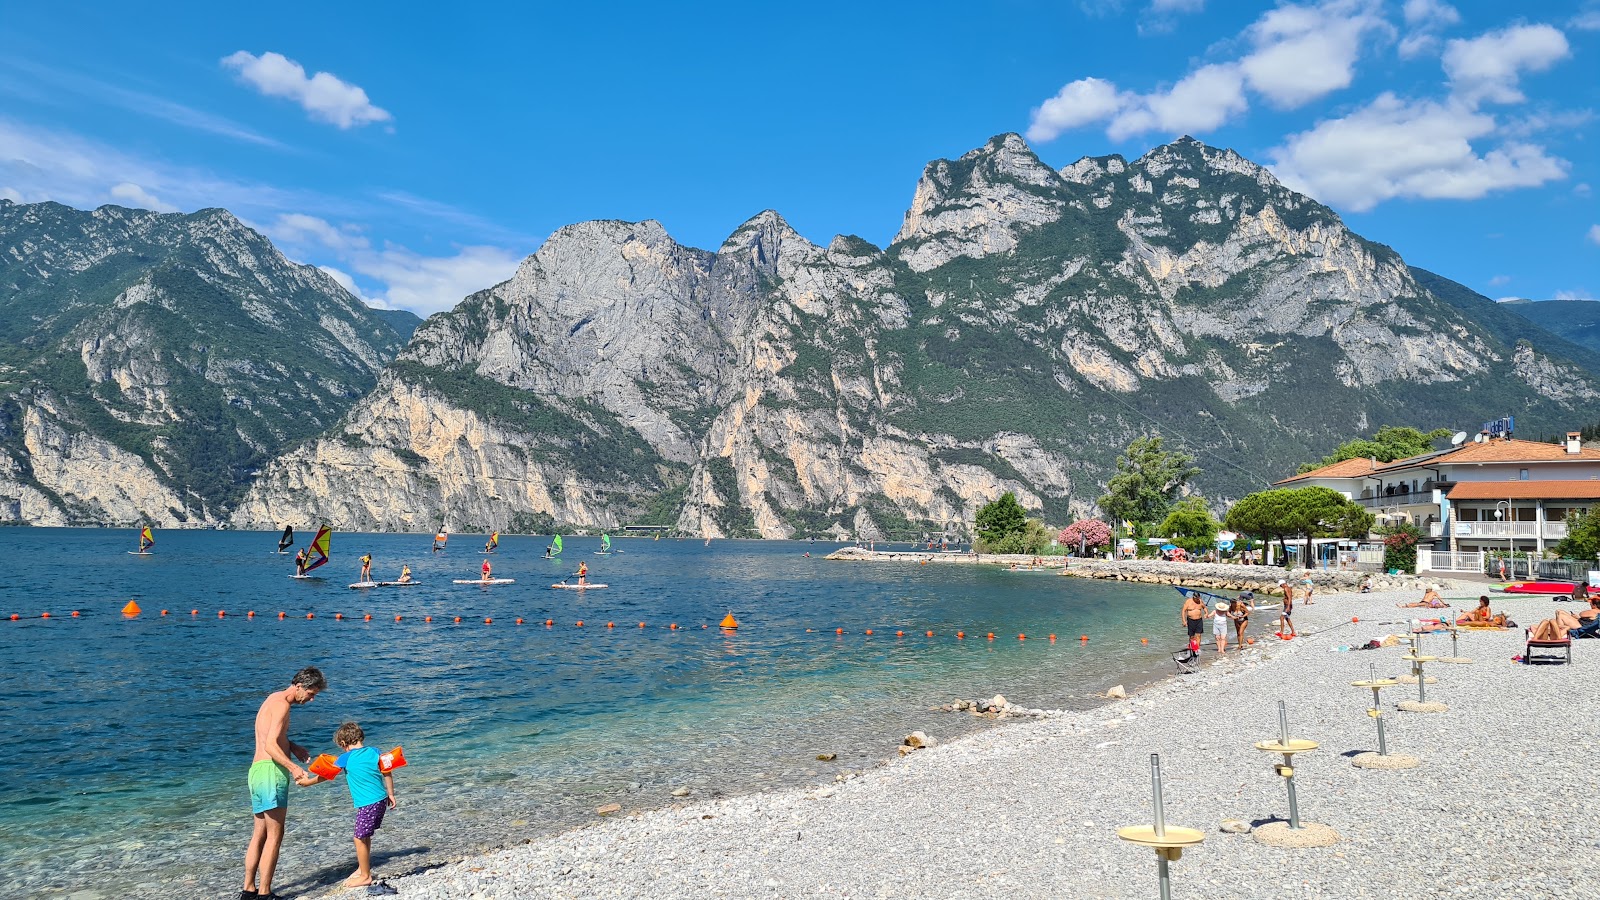 Photo of Spiaggia di Torbole with gray fine pebble surface